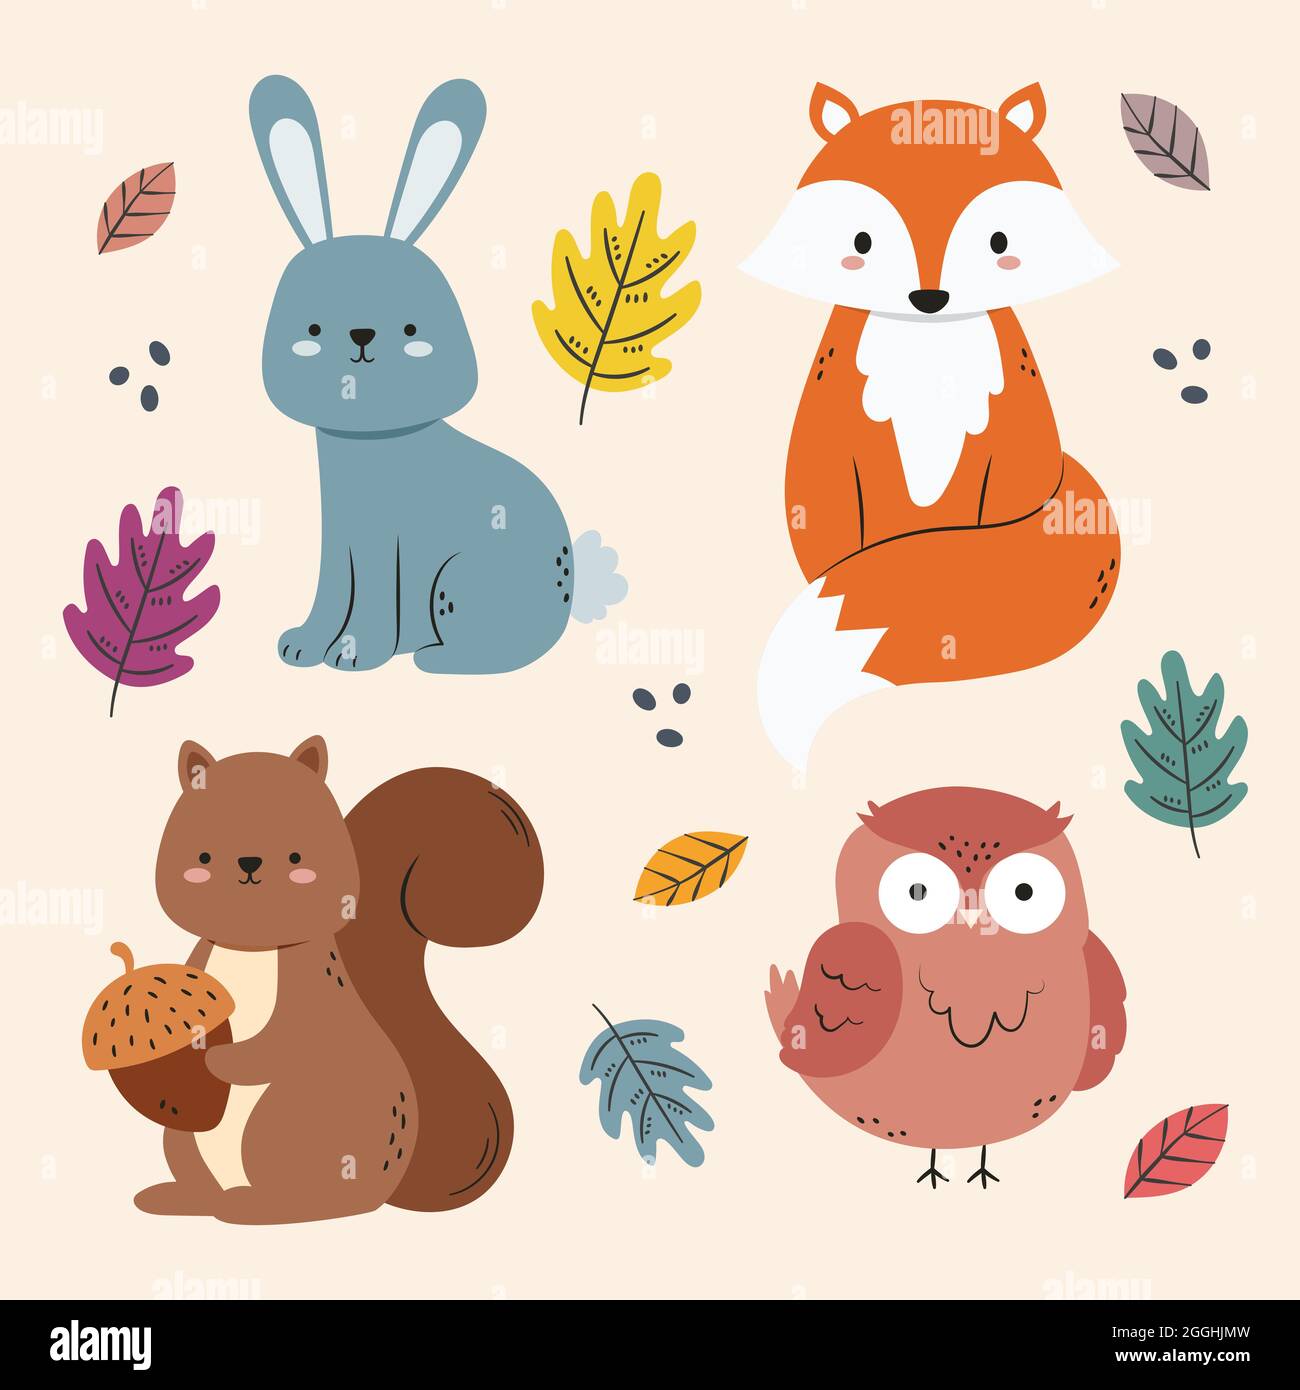 Autumn animals set Vector illustration Stock Vector Image & Art - Alamy